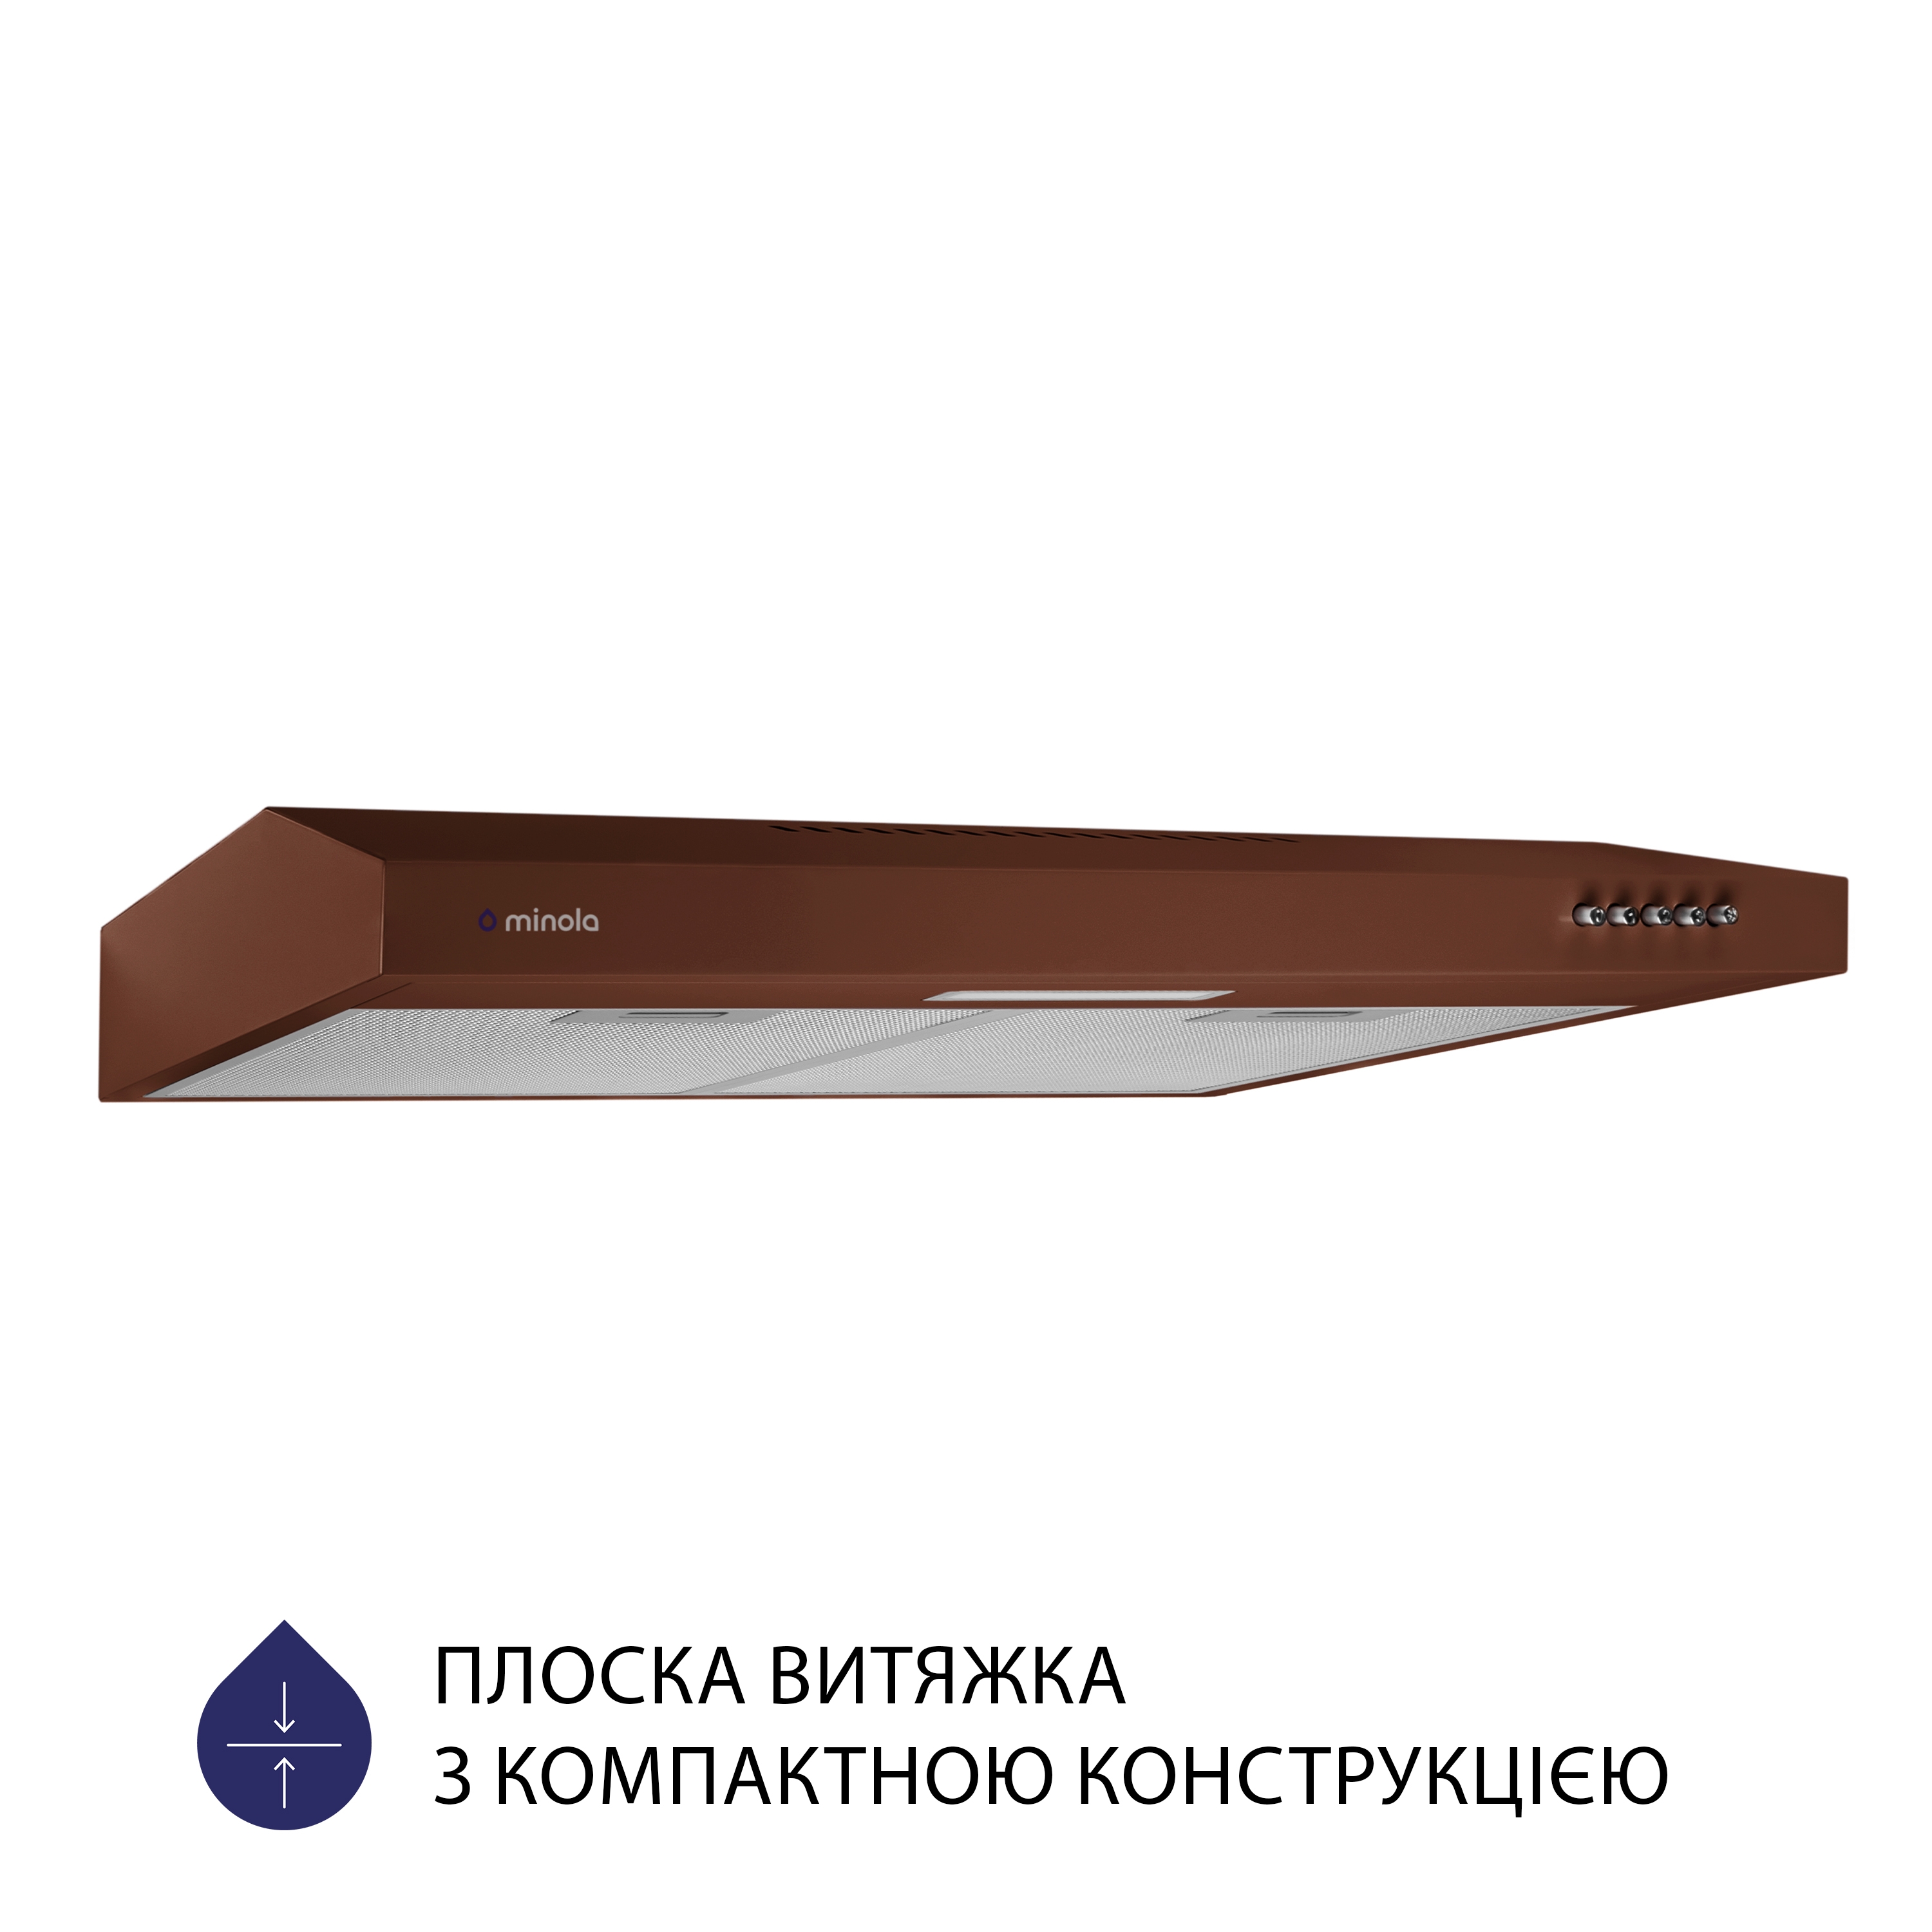 Витяжка кухонная плоская Minola HPL 613 BR цена 2799.00 грн - фотография 2